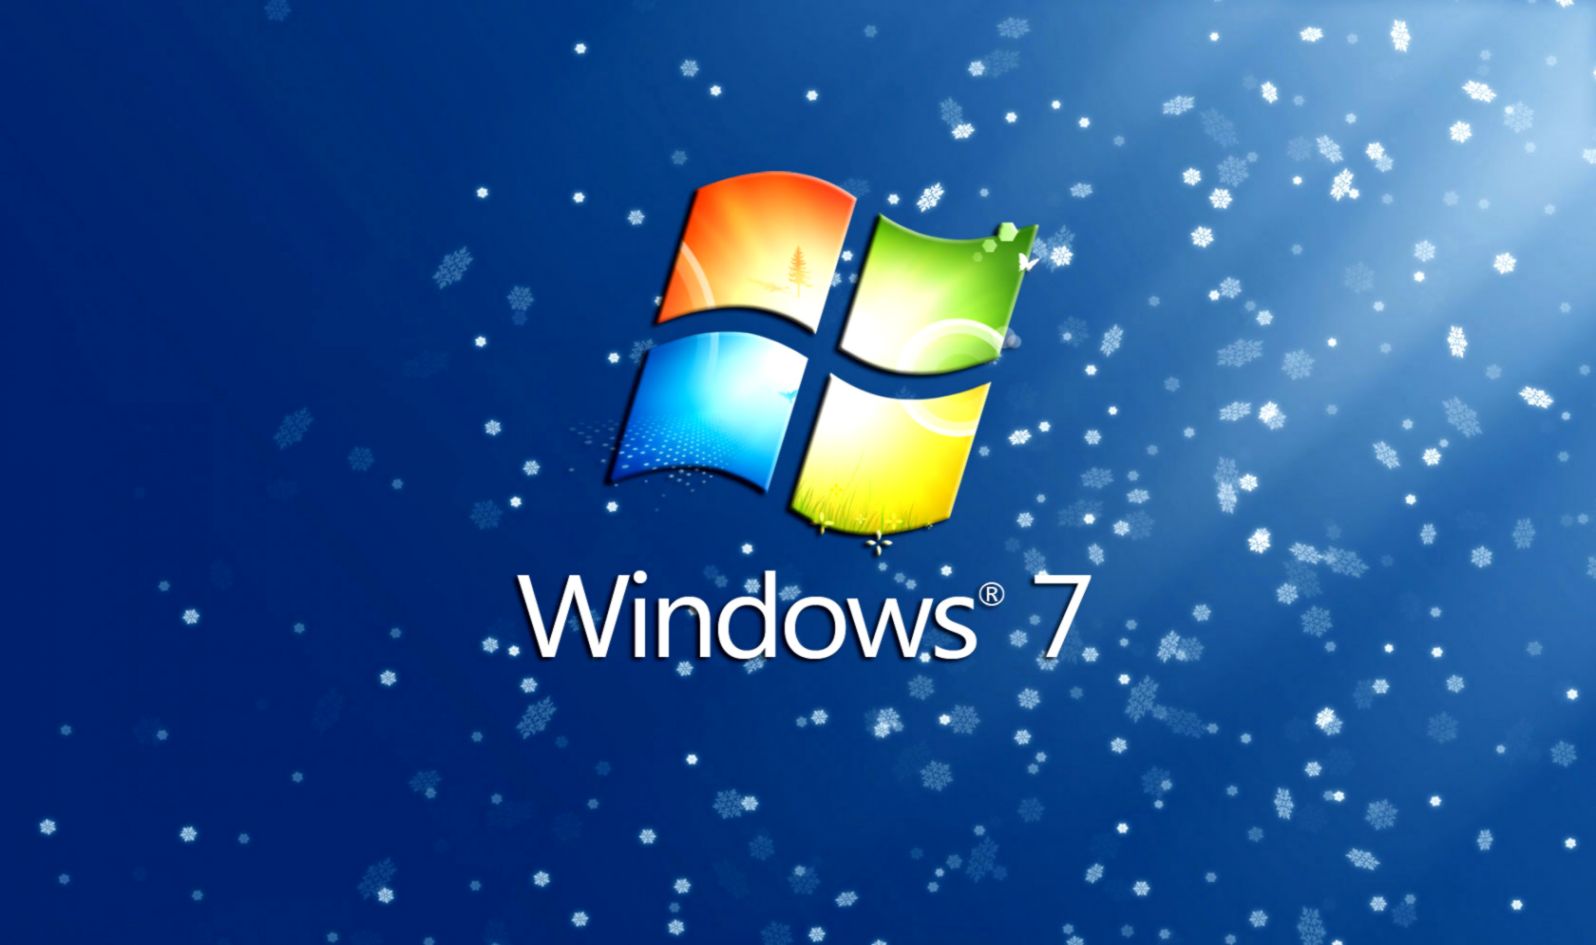 Christmas Wallpaper Downloads Windows 7 Wallpapers9 - Windows 7 Christmas  Background - 1596x945 Wallpaper 